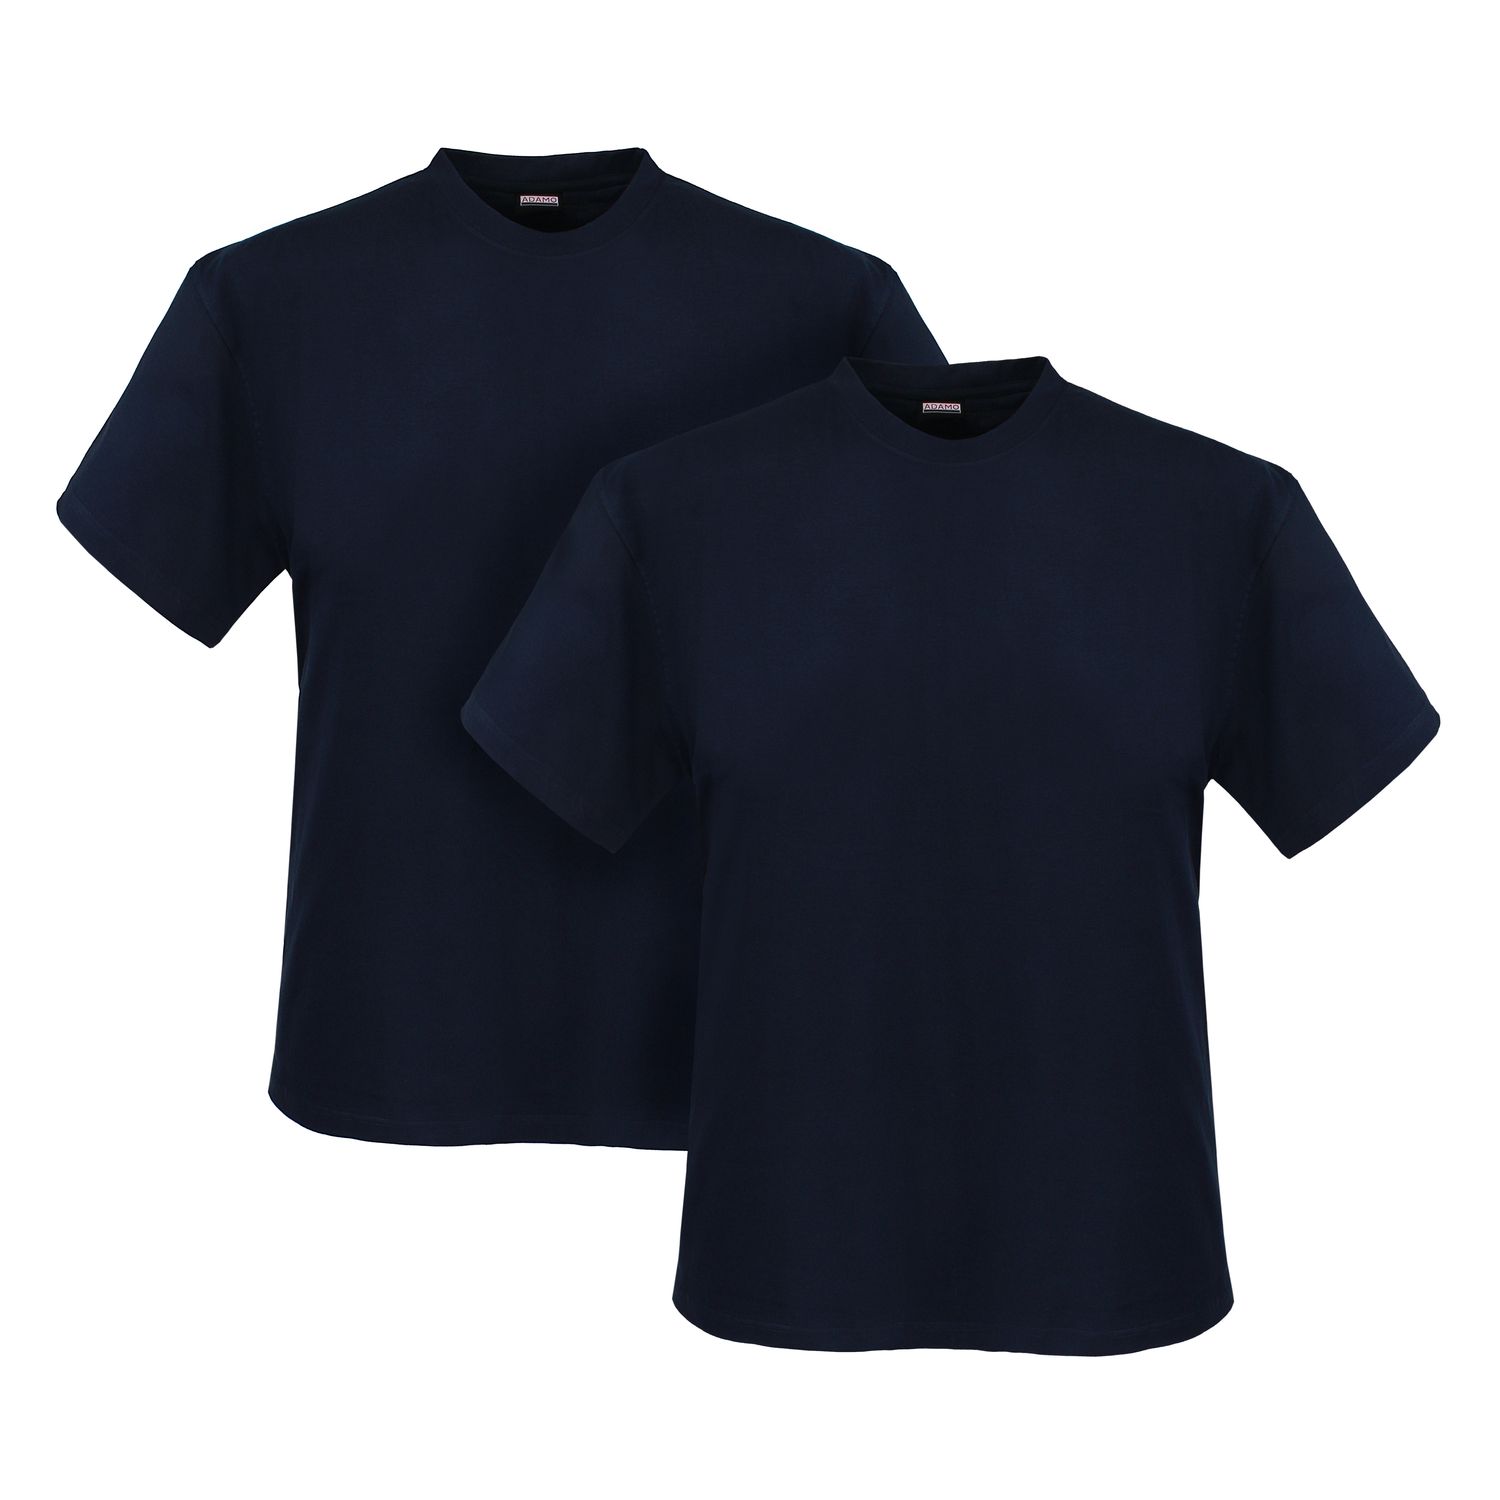 ADAMO Rundhals T-Shirt MARLON 2er-Pack in verschiedenen Farben und Größen bis 12XL